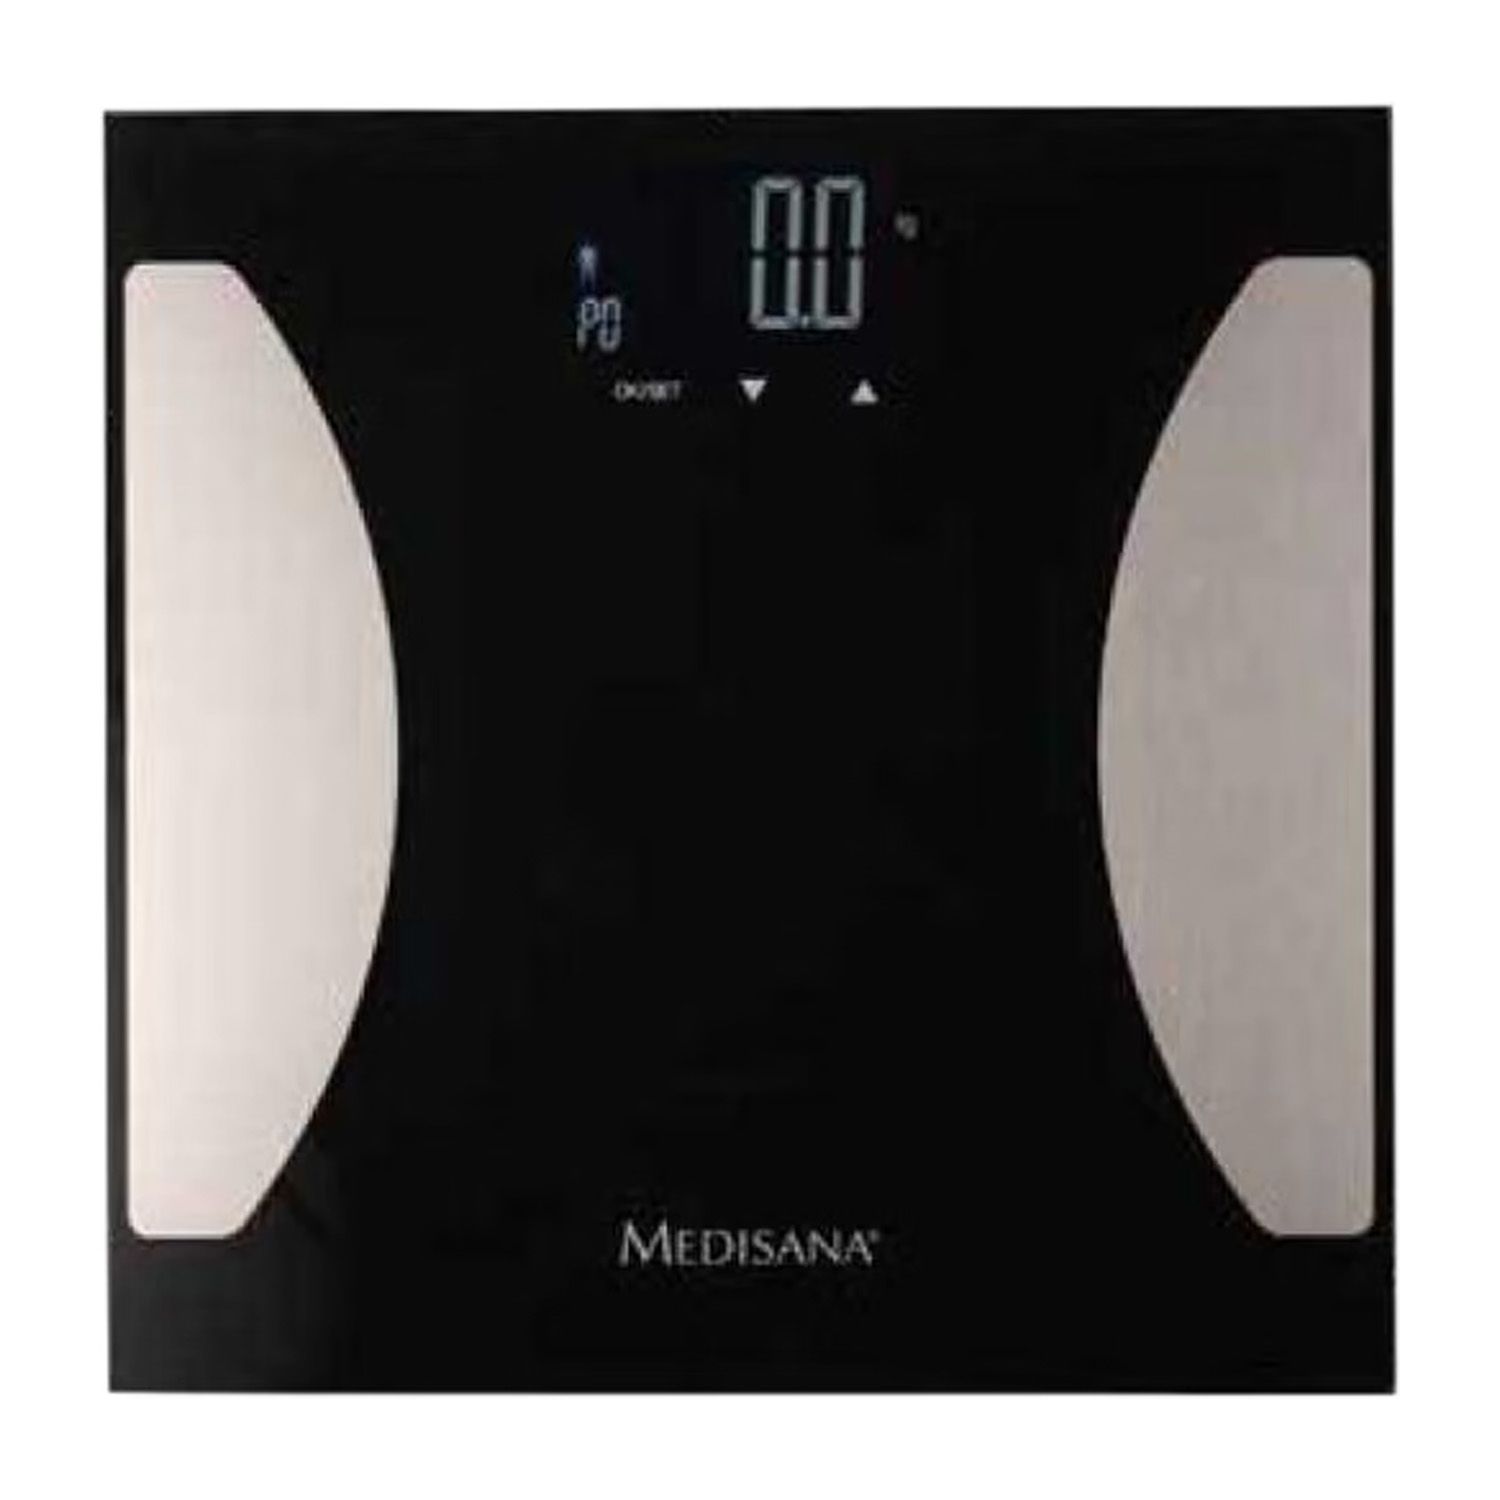 medisana BS 475 digitale Körperanalysewaage zur Messung von Körperfett, Körperwasser und Muskelmasse